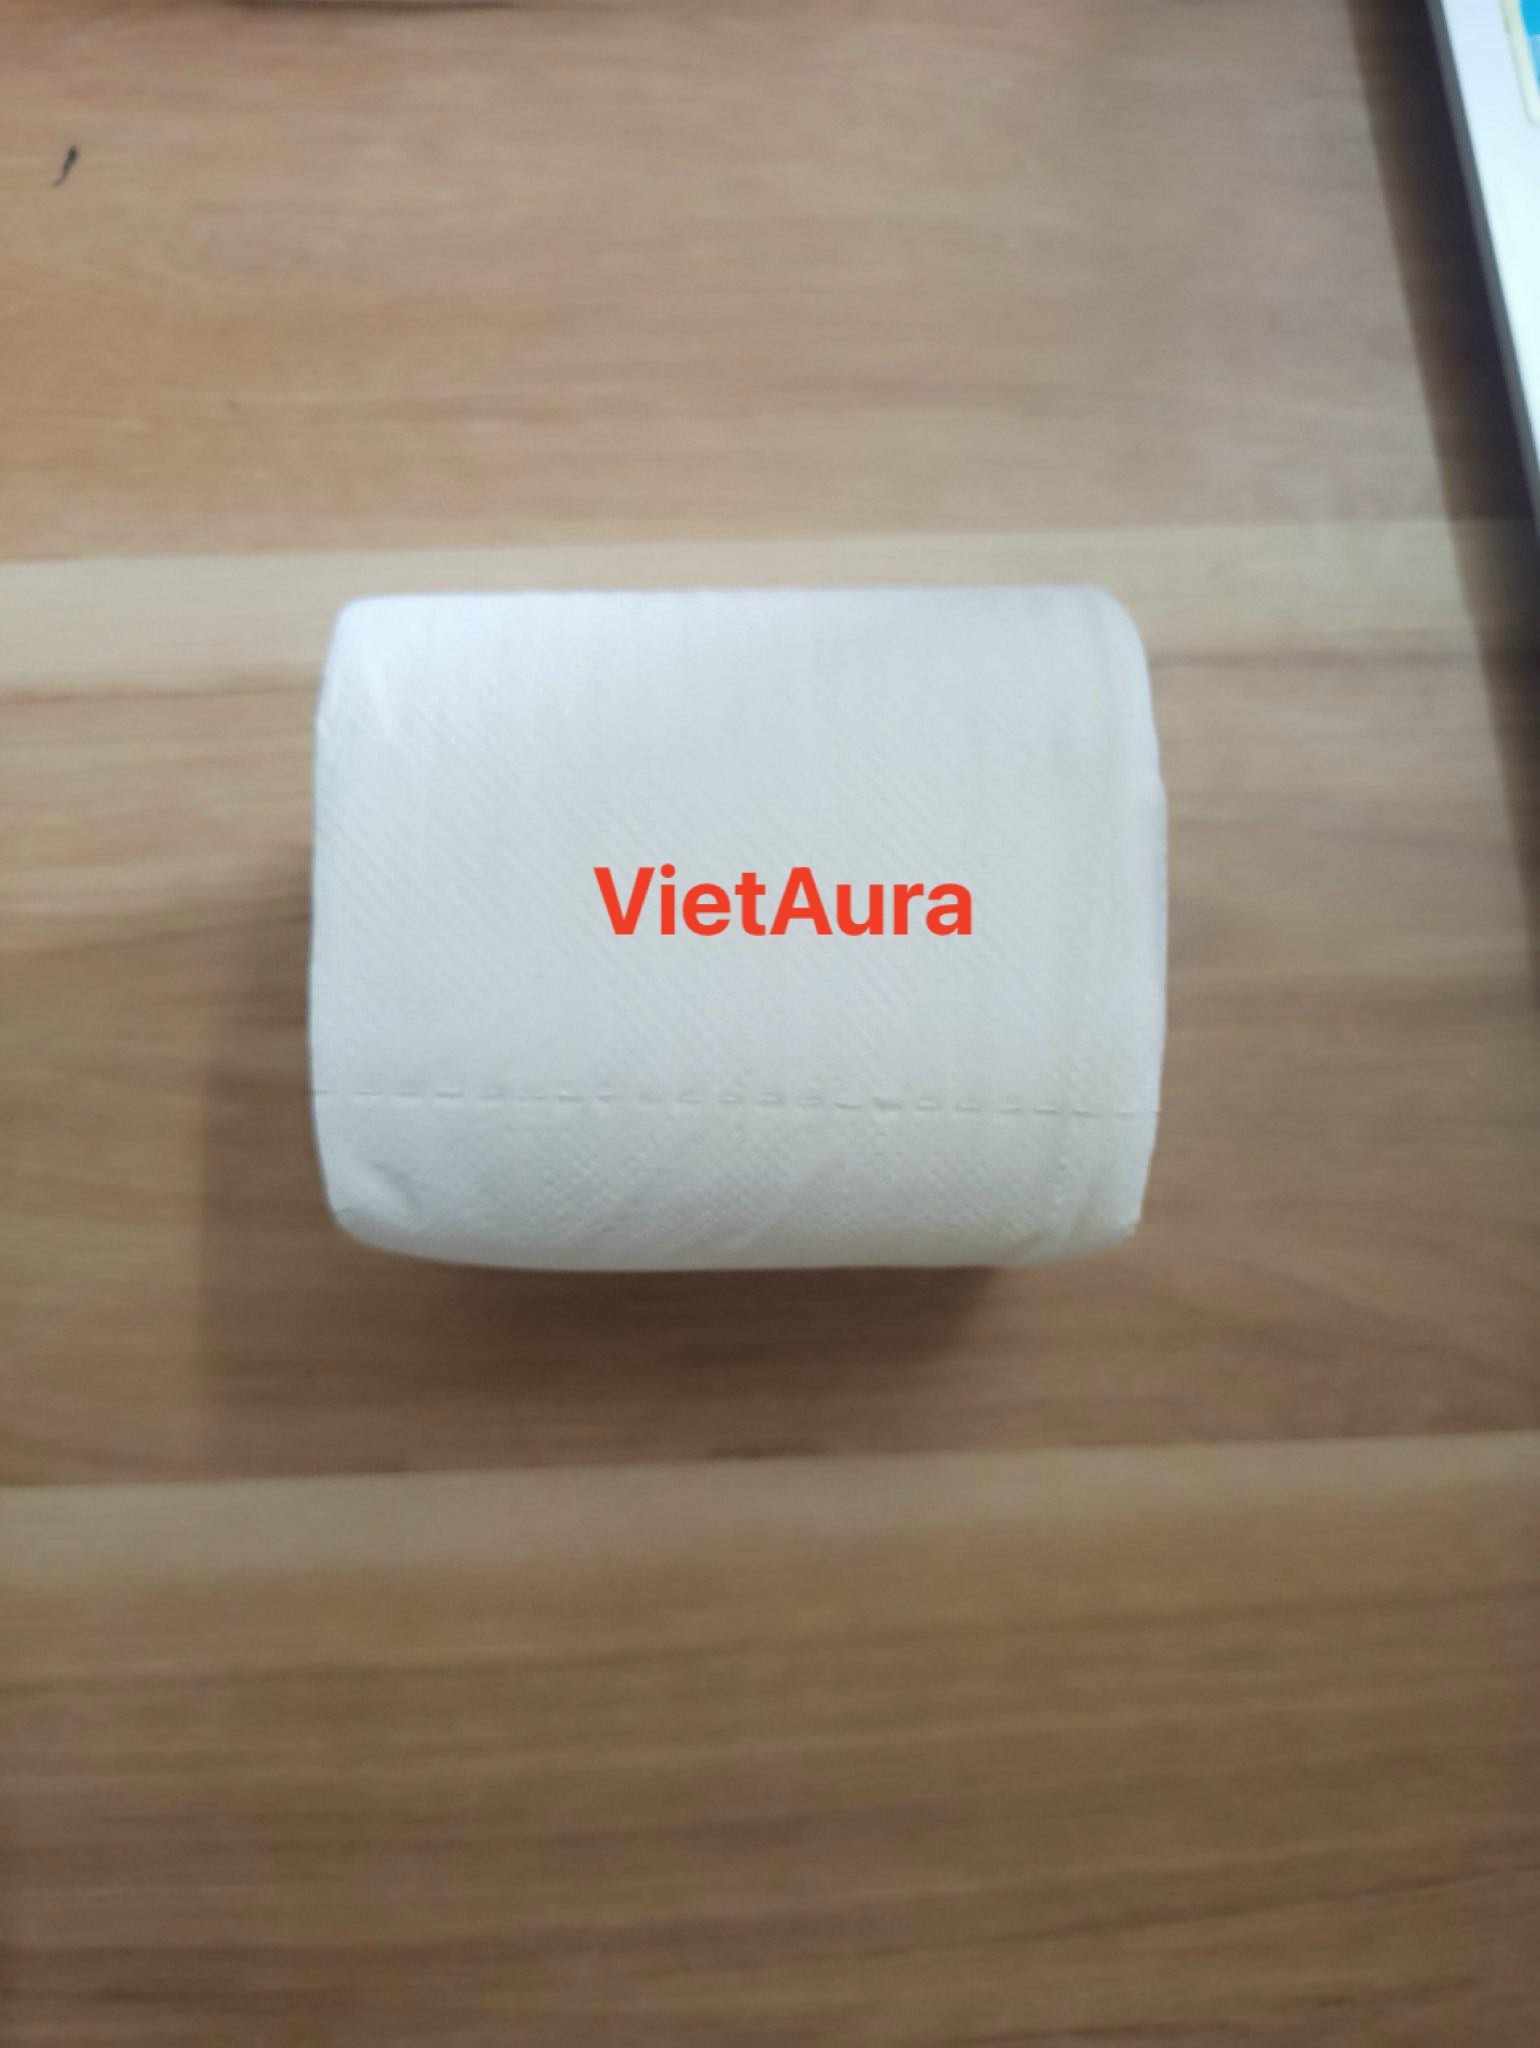 Công ty TNHH VietAura cần tìm vận chuyển đường biển xuất khẩu giấy vệ sinh sang Mỹ